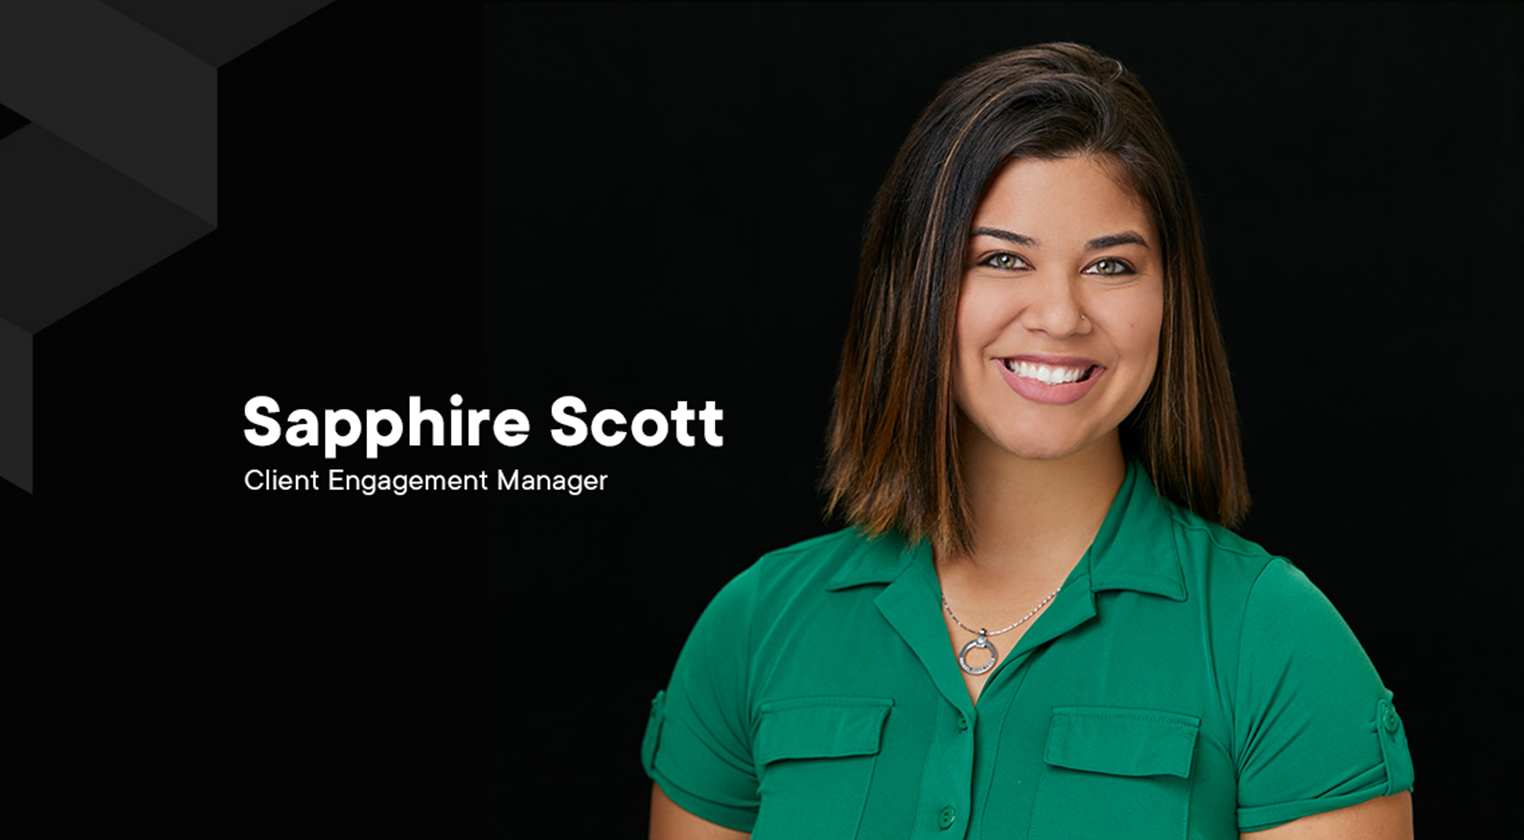 Meet Sapphire Scott